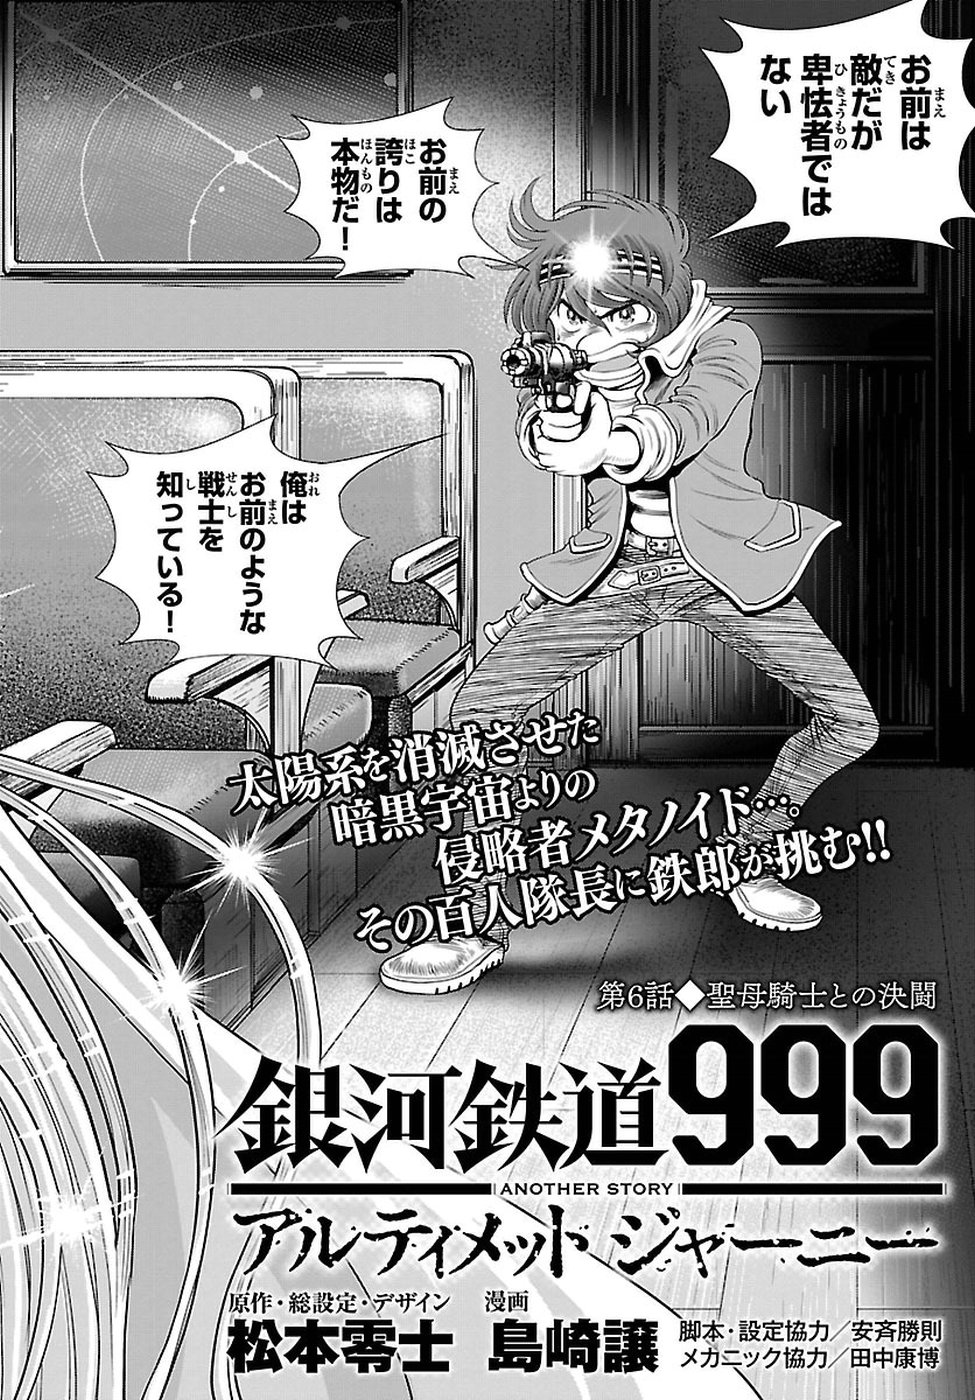 銀河鉄道999–Another Story–アルティメットジャーニー 第6話 - Page 2